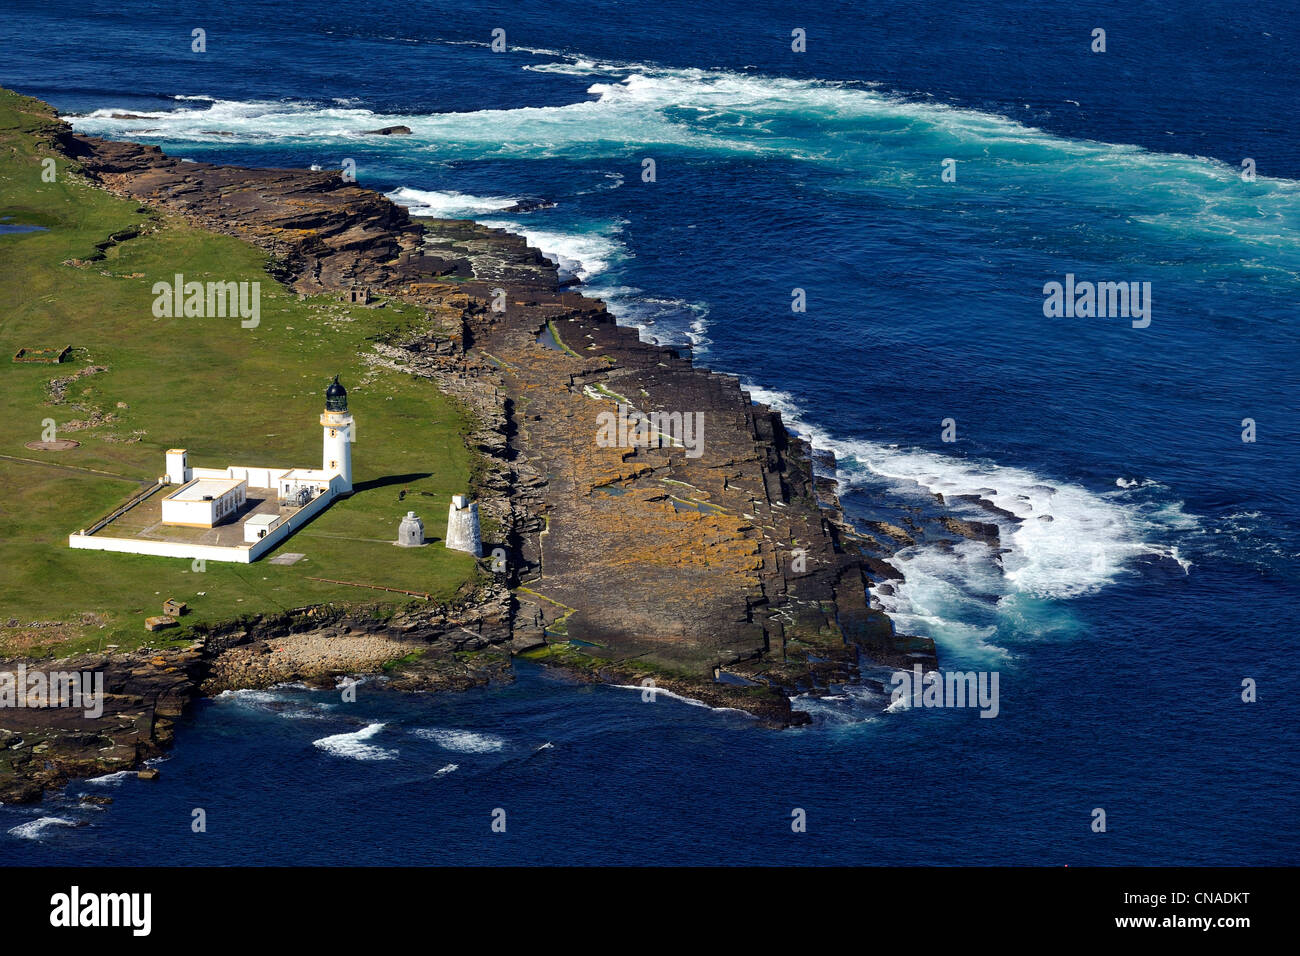 Royaume-uni, Ecosse, Highland, le phare de l'île de stroma au nord de John O'Groats met en garde contre les navires de la proximité Banque D'Images